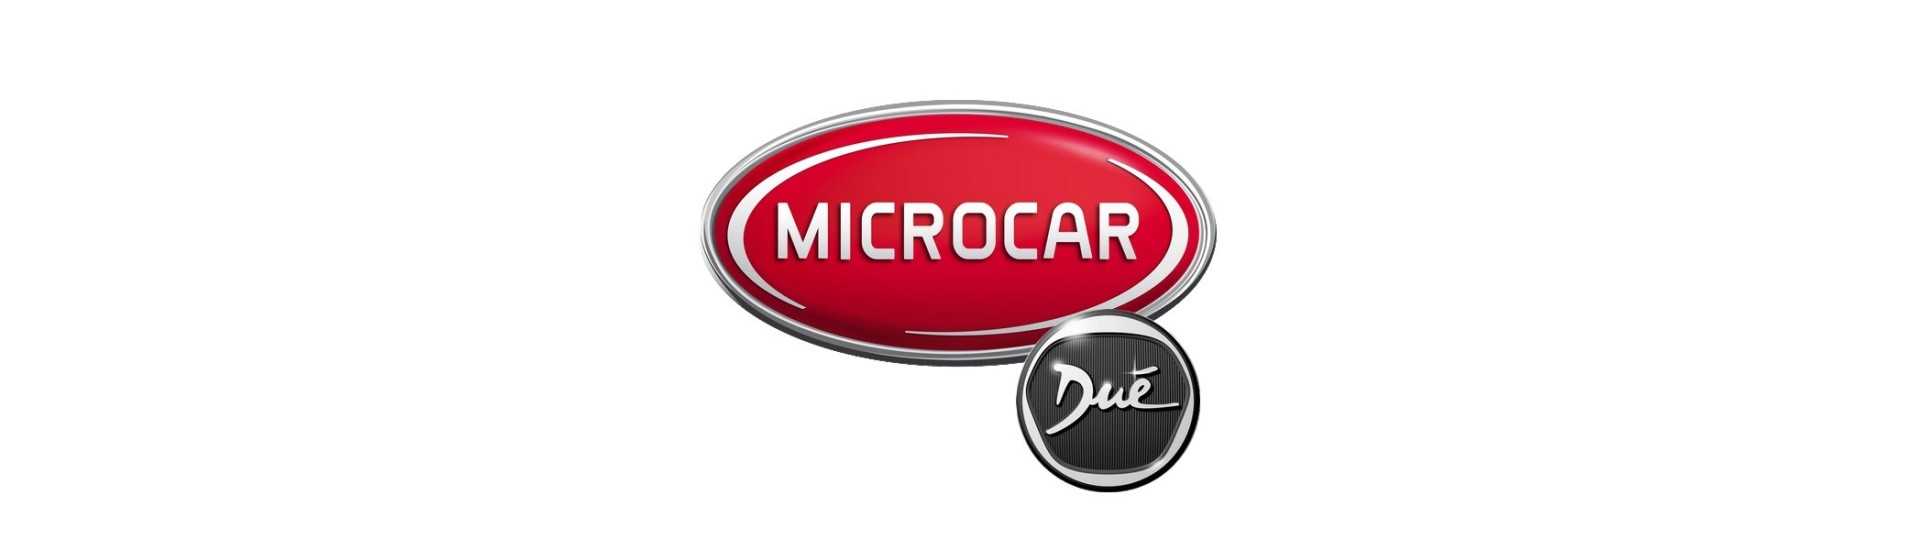 Cardan al mejor precio para coche sin permiso Microcar Dué